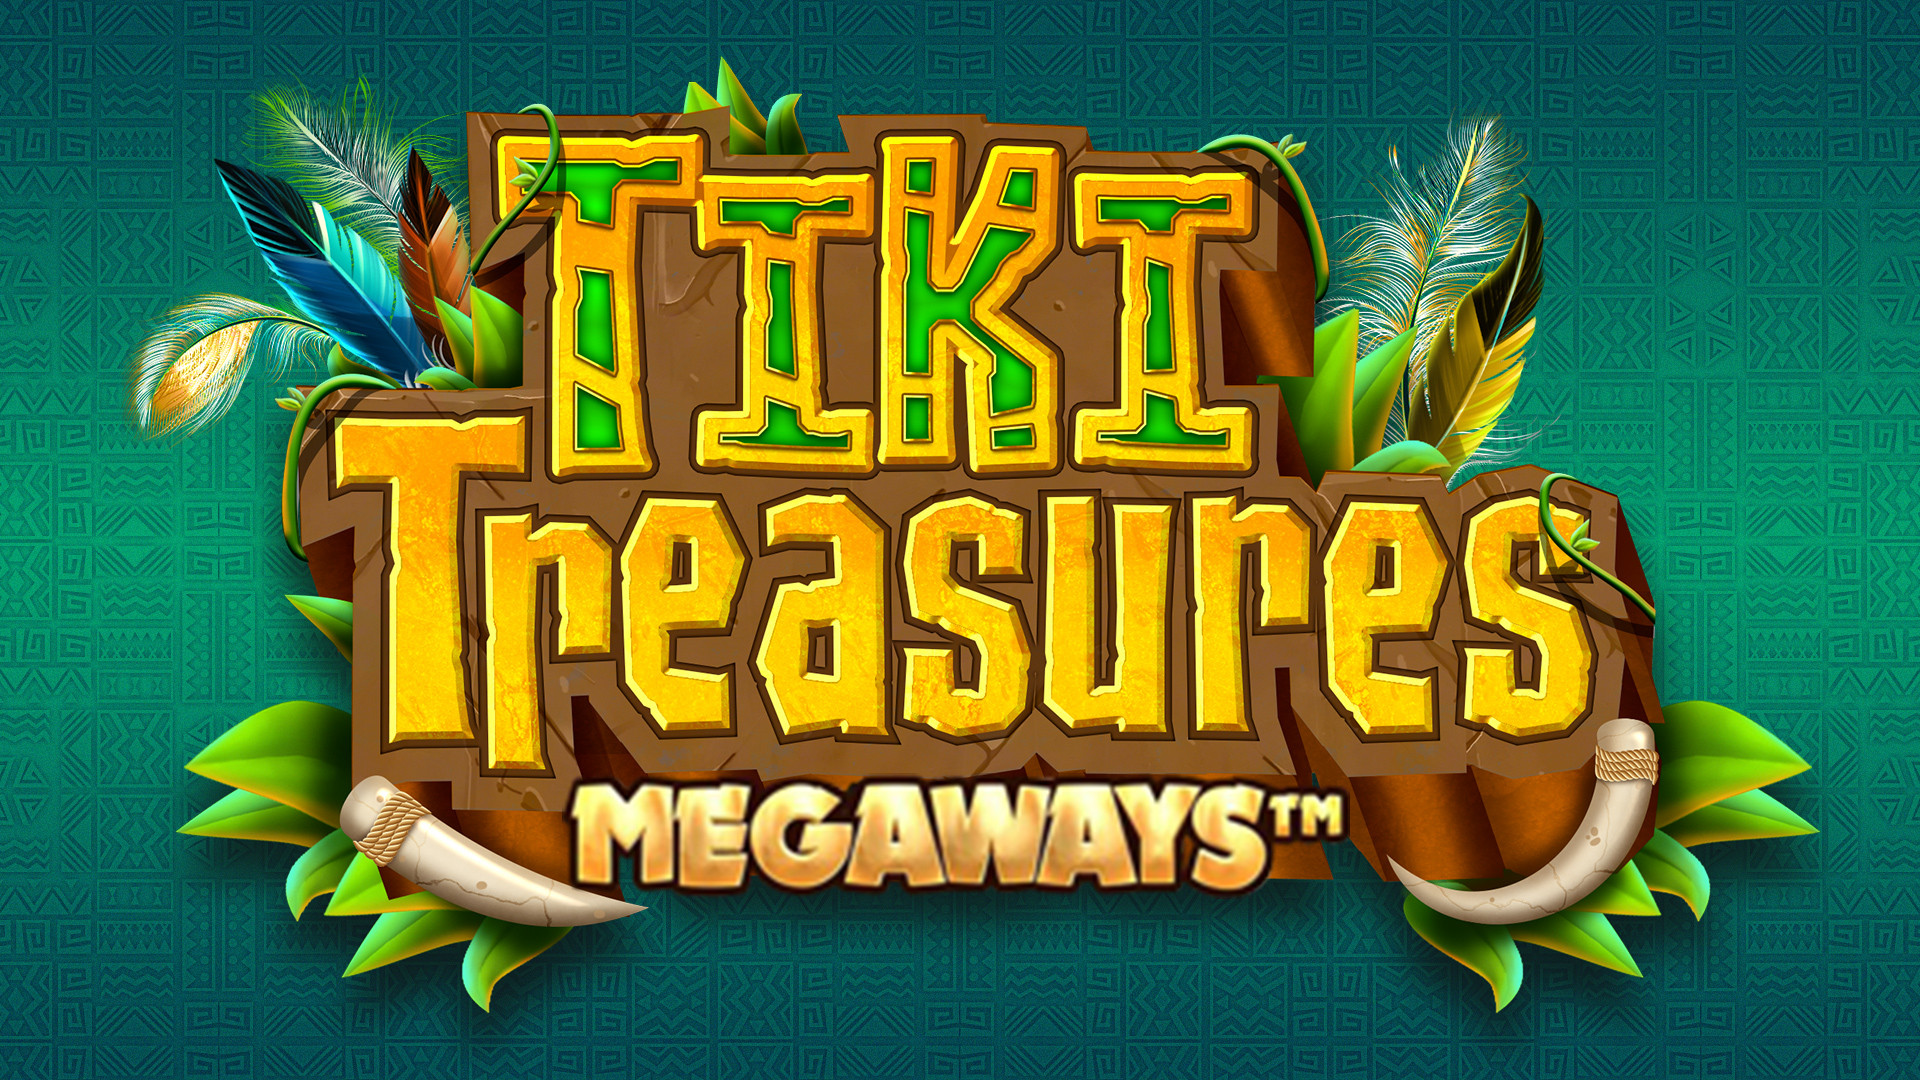 Tiki Treasures MEGAWAYS